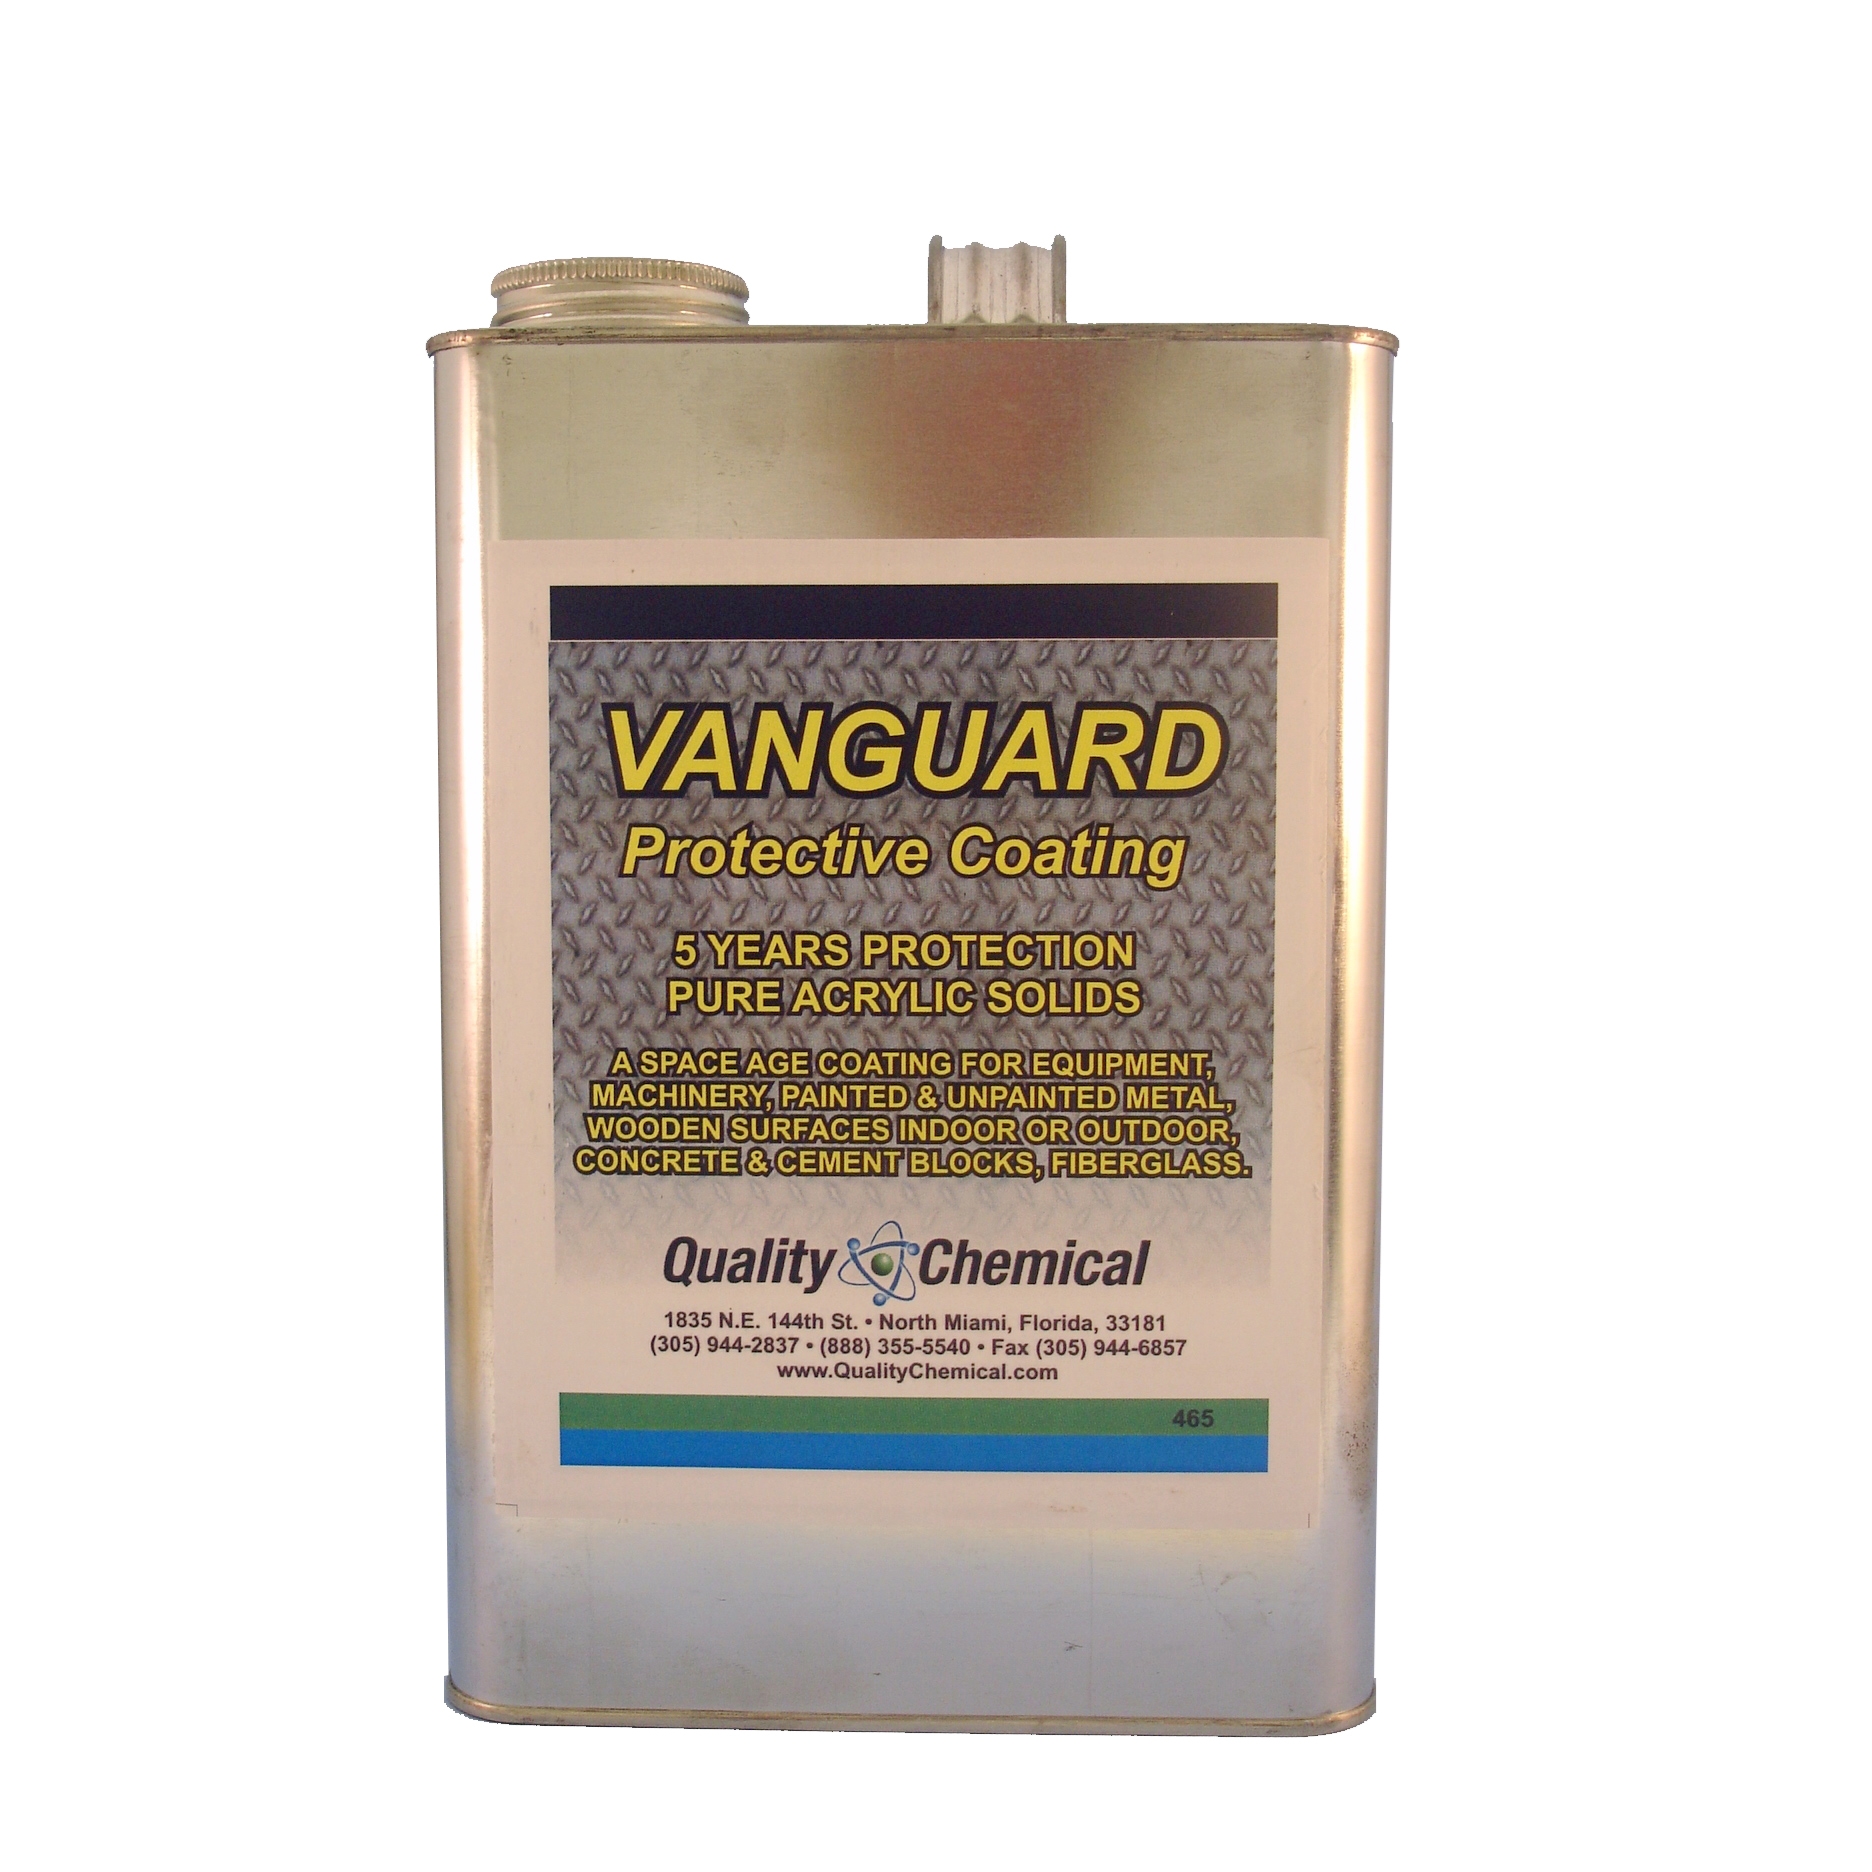 Vanguard Protective Coating